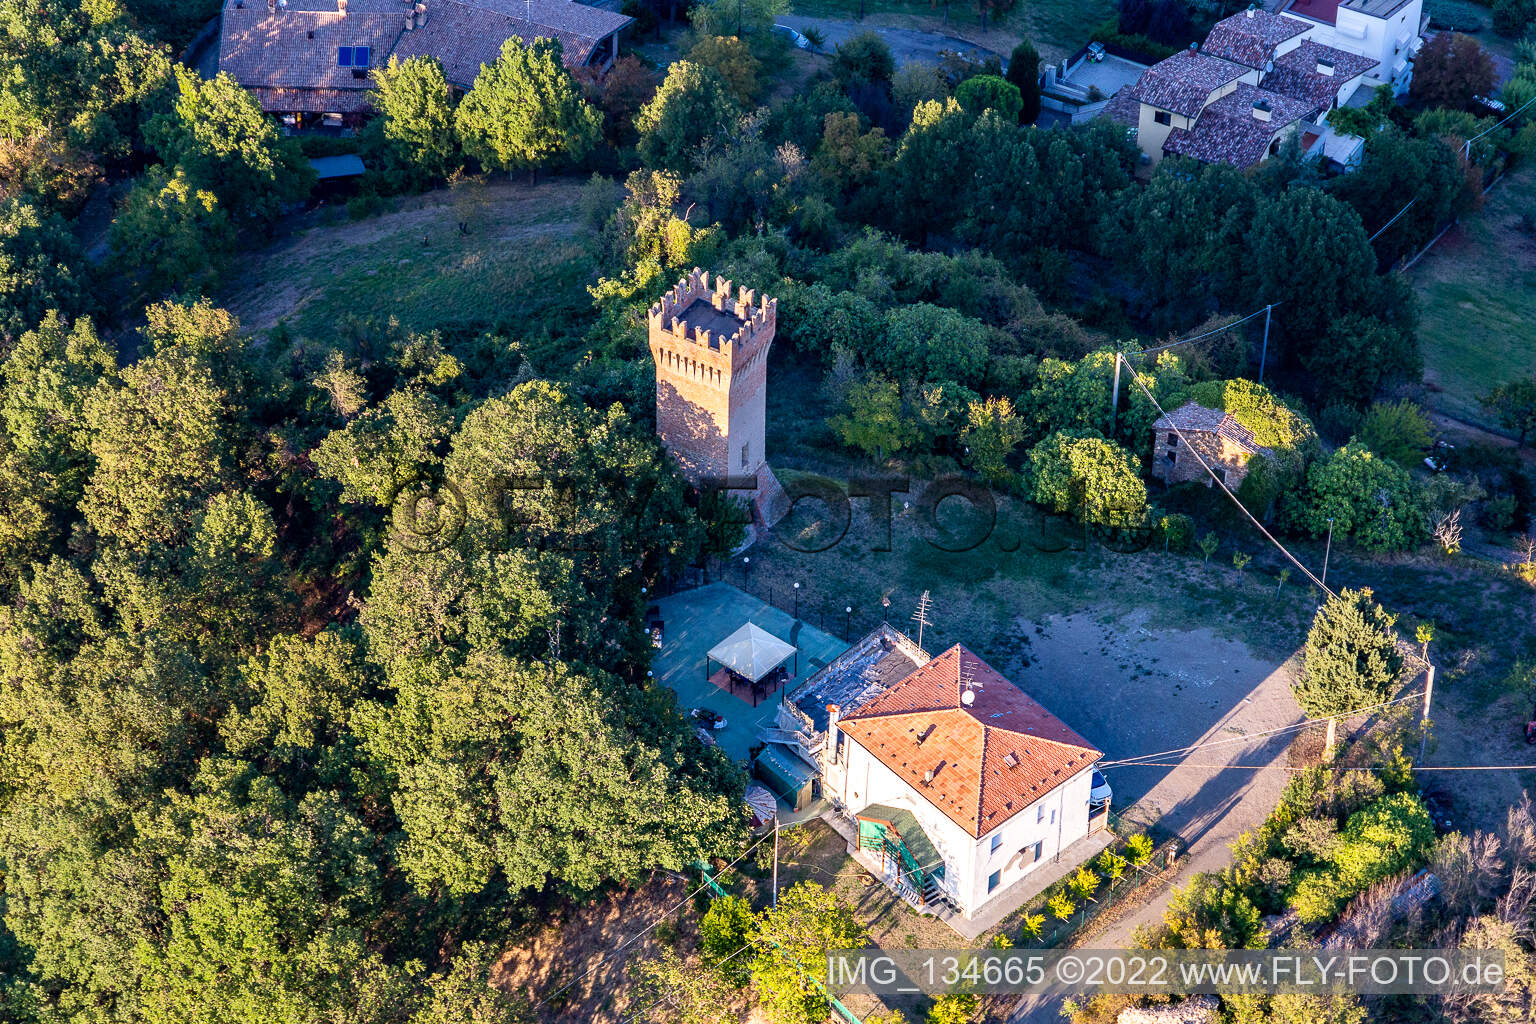 Aerial view of Dinazzano Castle in Casalgrande in the state Reggio Emilia, Italy